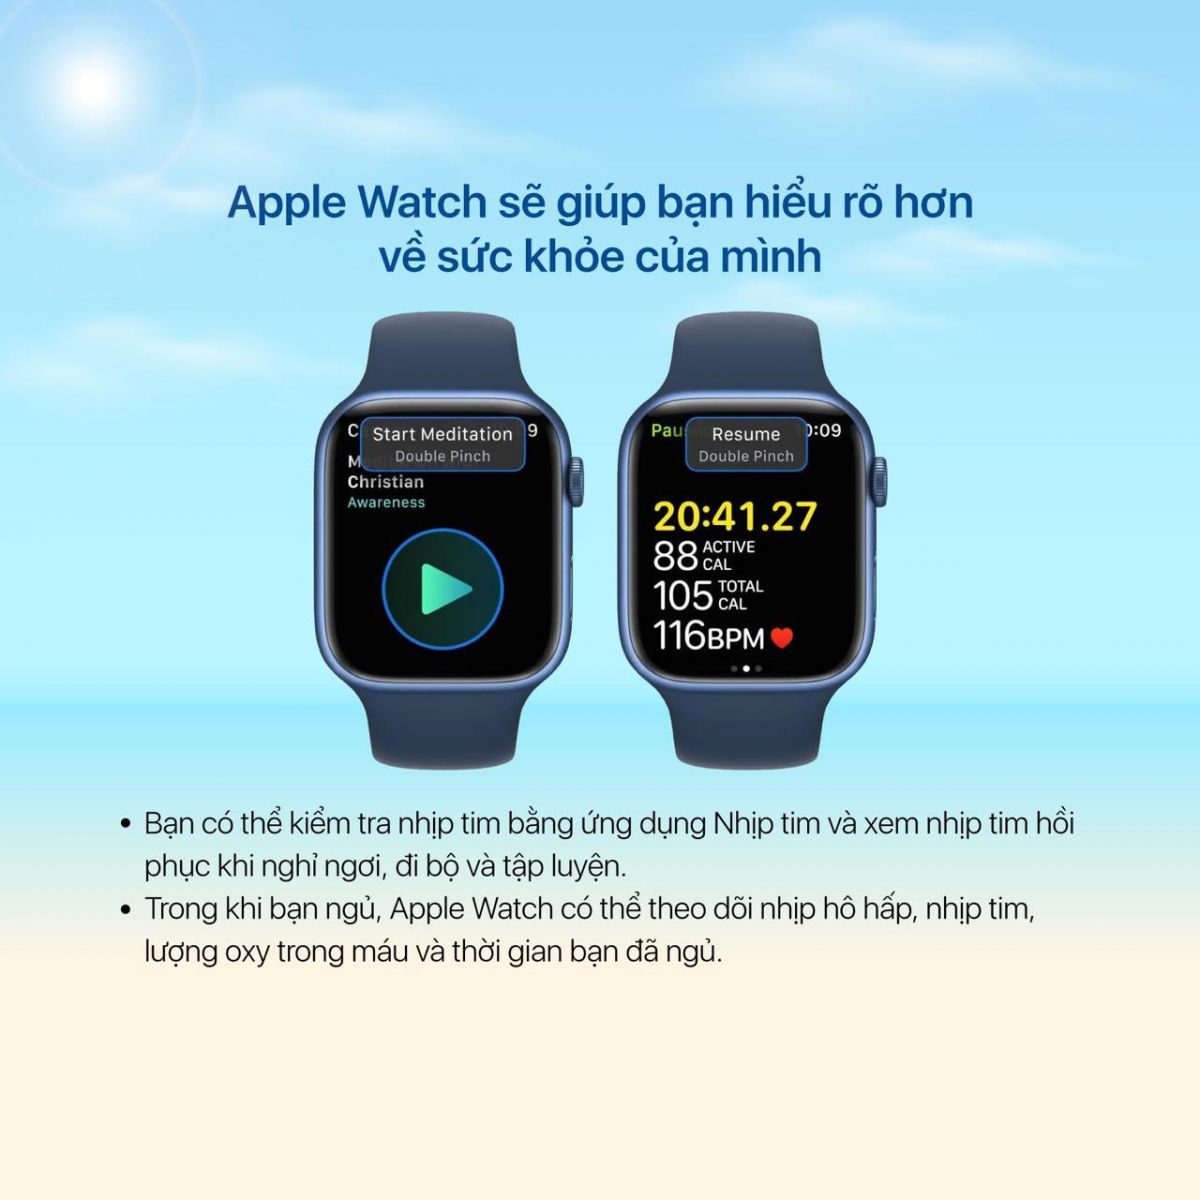 Apple Watch sẽ giúp bạn hiểu rõ hơn về sức khỏe của mình